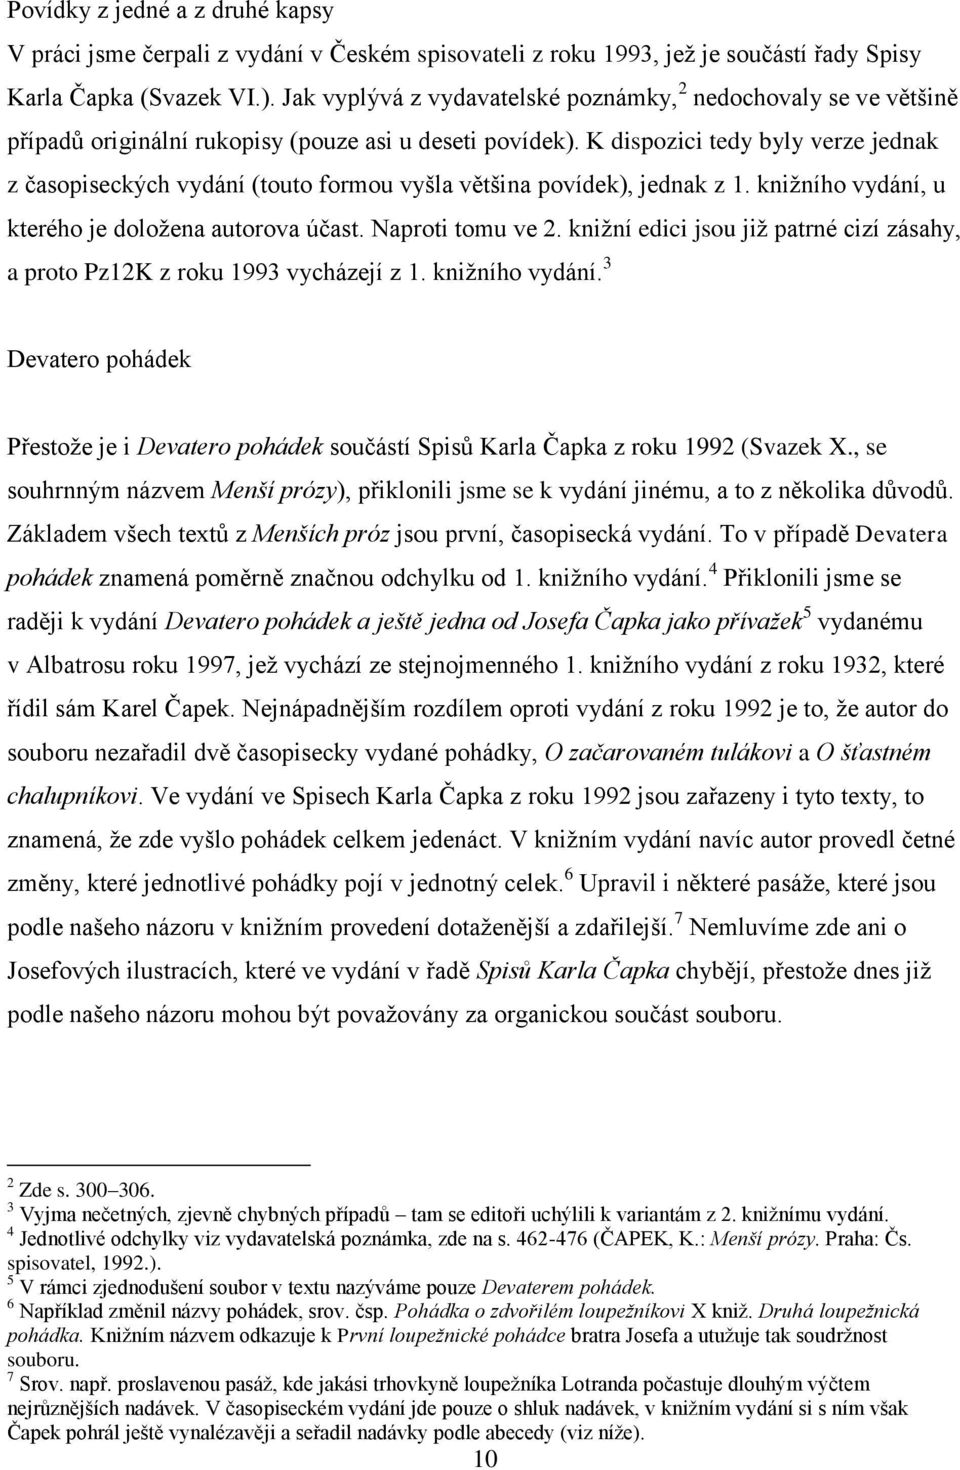 Diplomová práce. Anna Vrbová PRÓZY KARLA ČAPKA PRO DĚTI A PRO DOSPĚLÉ.  POROVNÁNÍ STYLU. - PDF Free Download